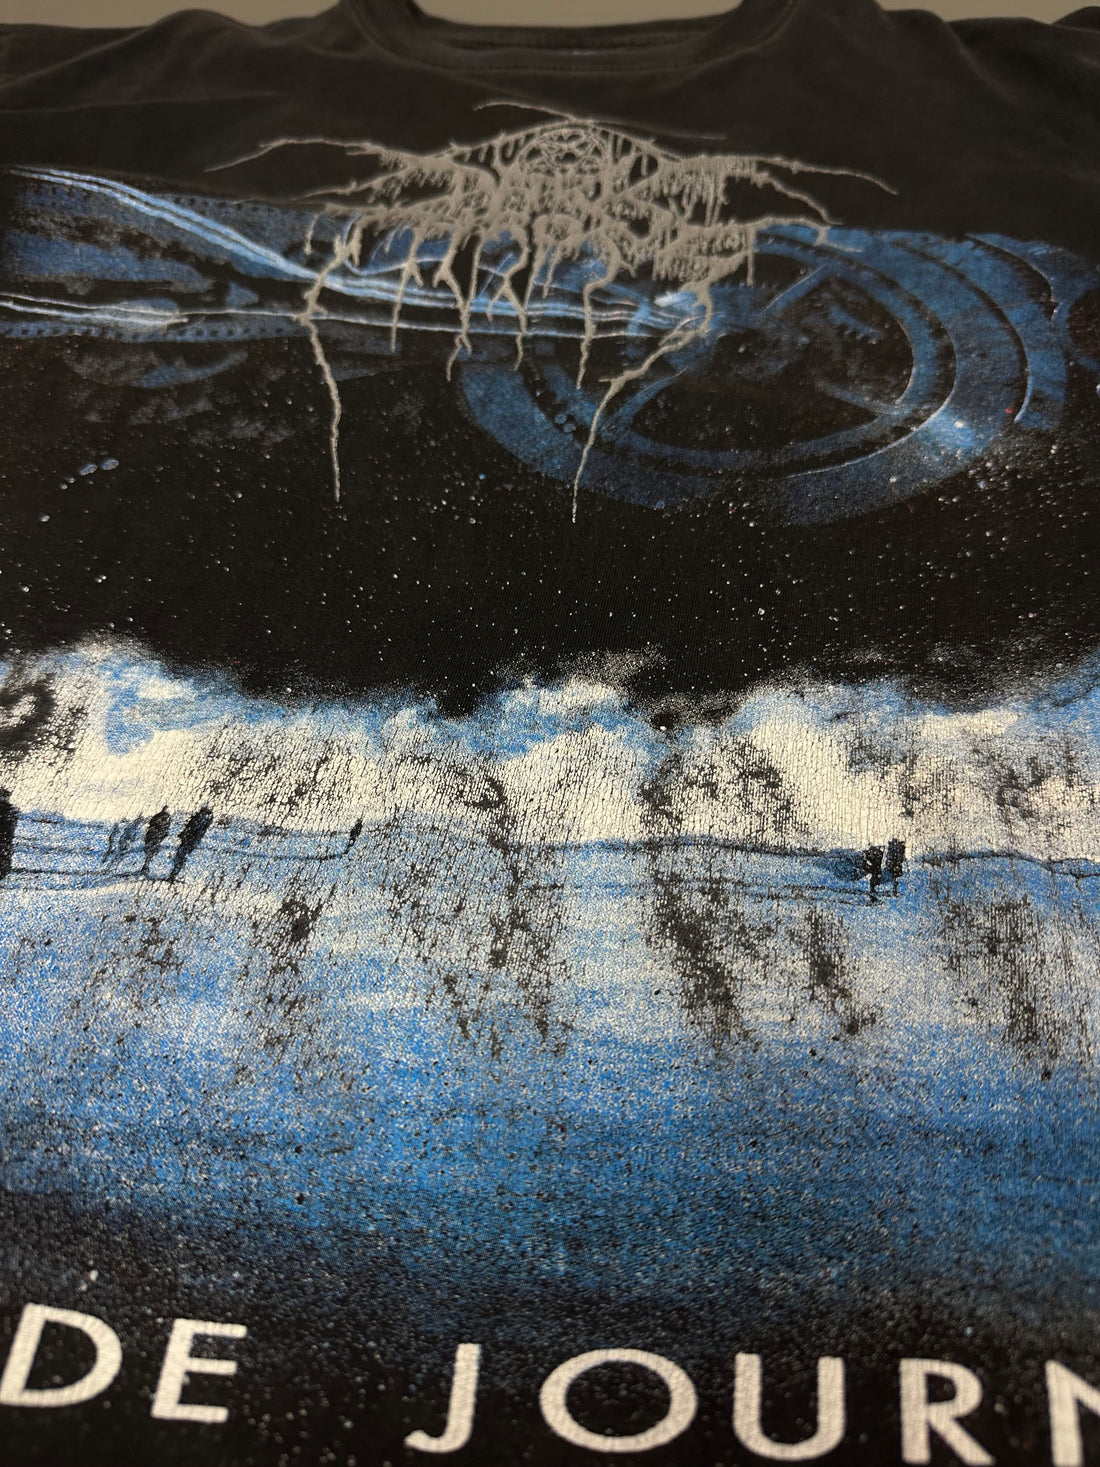 Darkthrone 2001 Soulside Journey Vintage T-Shirt